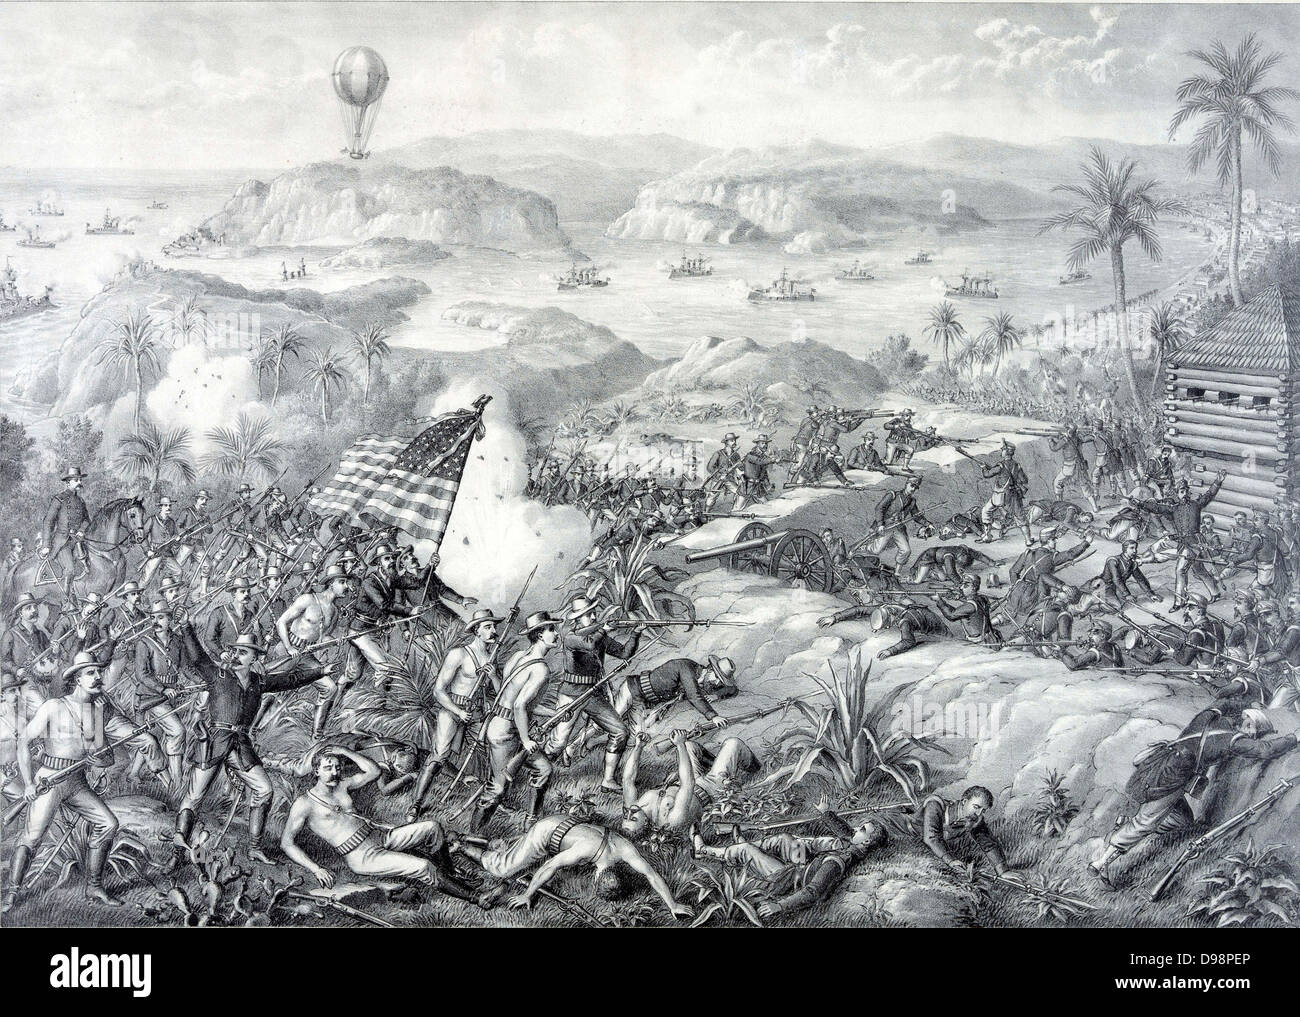 https://c8.alamy.com/compes/d98pep/spanish-cuban-guerra-americana-1898-captura-de-la-espanola-de-el-caney-el-paso-y-las-fortificaciones-de-santiago-de-cuba-por-las-fuerzas-de-ee-uu-el-1-de-julio-de-1898-la-batalla-naval-en-la-bahia-que-tuvo-lugar-el-3-de-julio-con-la-destruccion-de-la-flota-espanola-d98pep.jpg